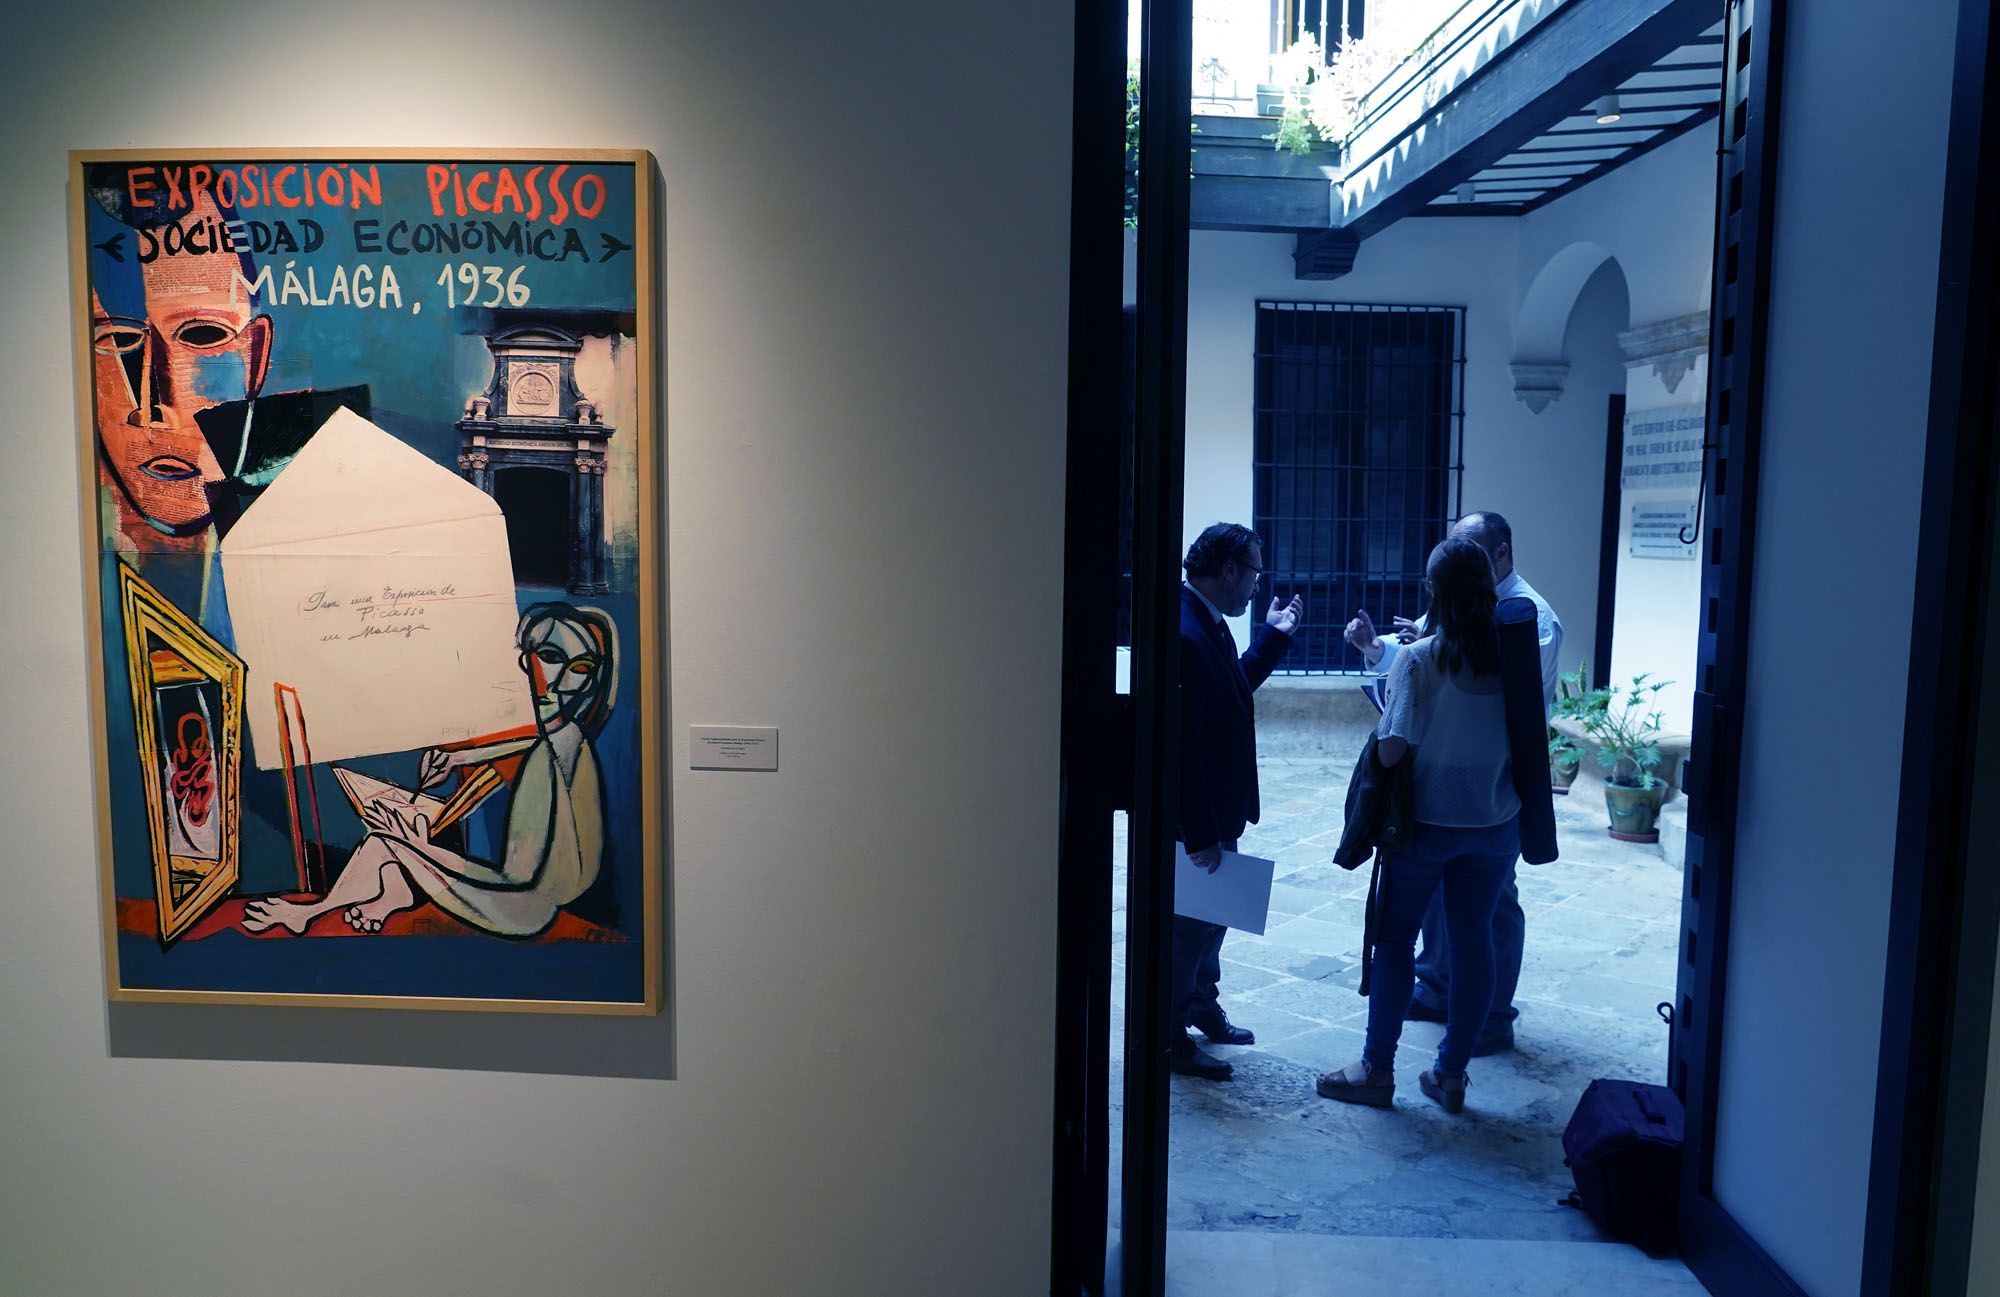 La exposición 'Picasso. Sociedad Económica, Málaga 1936', en imágenes.